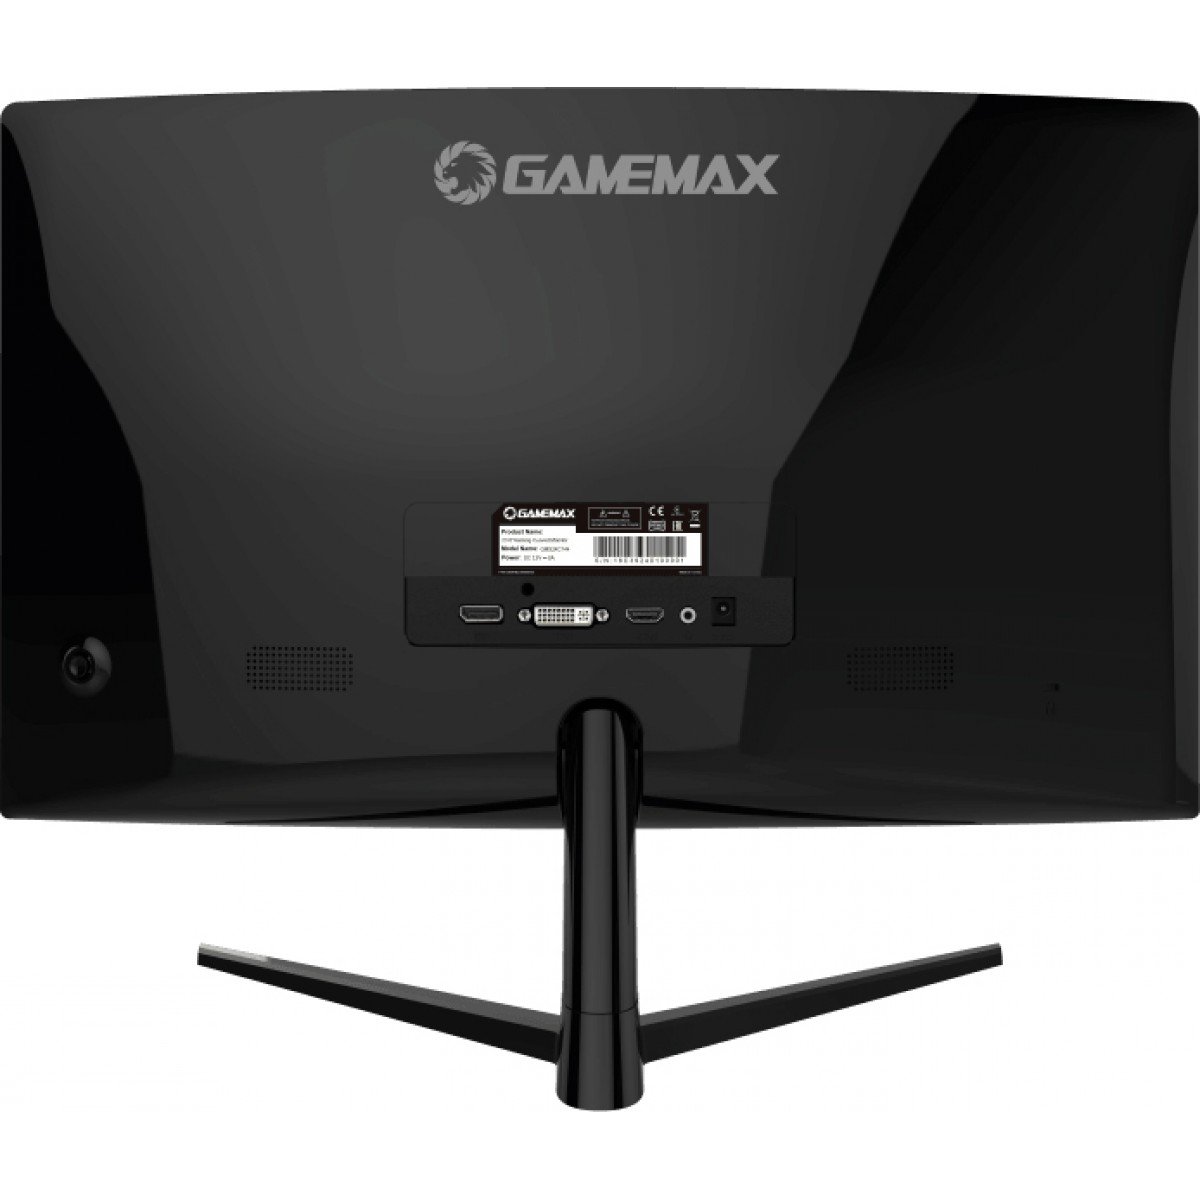 Monitor Gamer Gamemax 23,6 Curvado Preto LED 144Hz 1Ms Full HD 1920x1080P -  GMX24C144BR em Promoção na Americanas